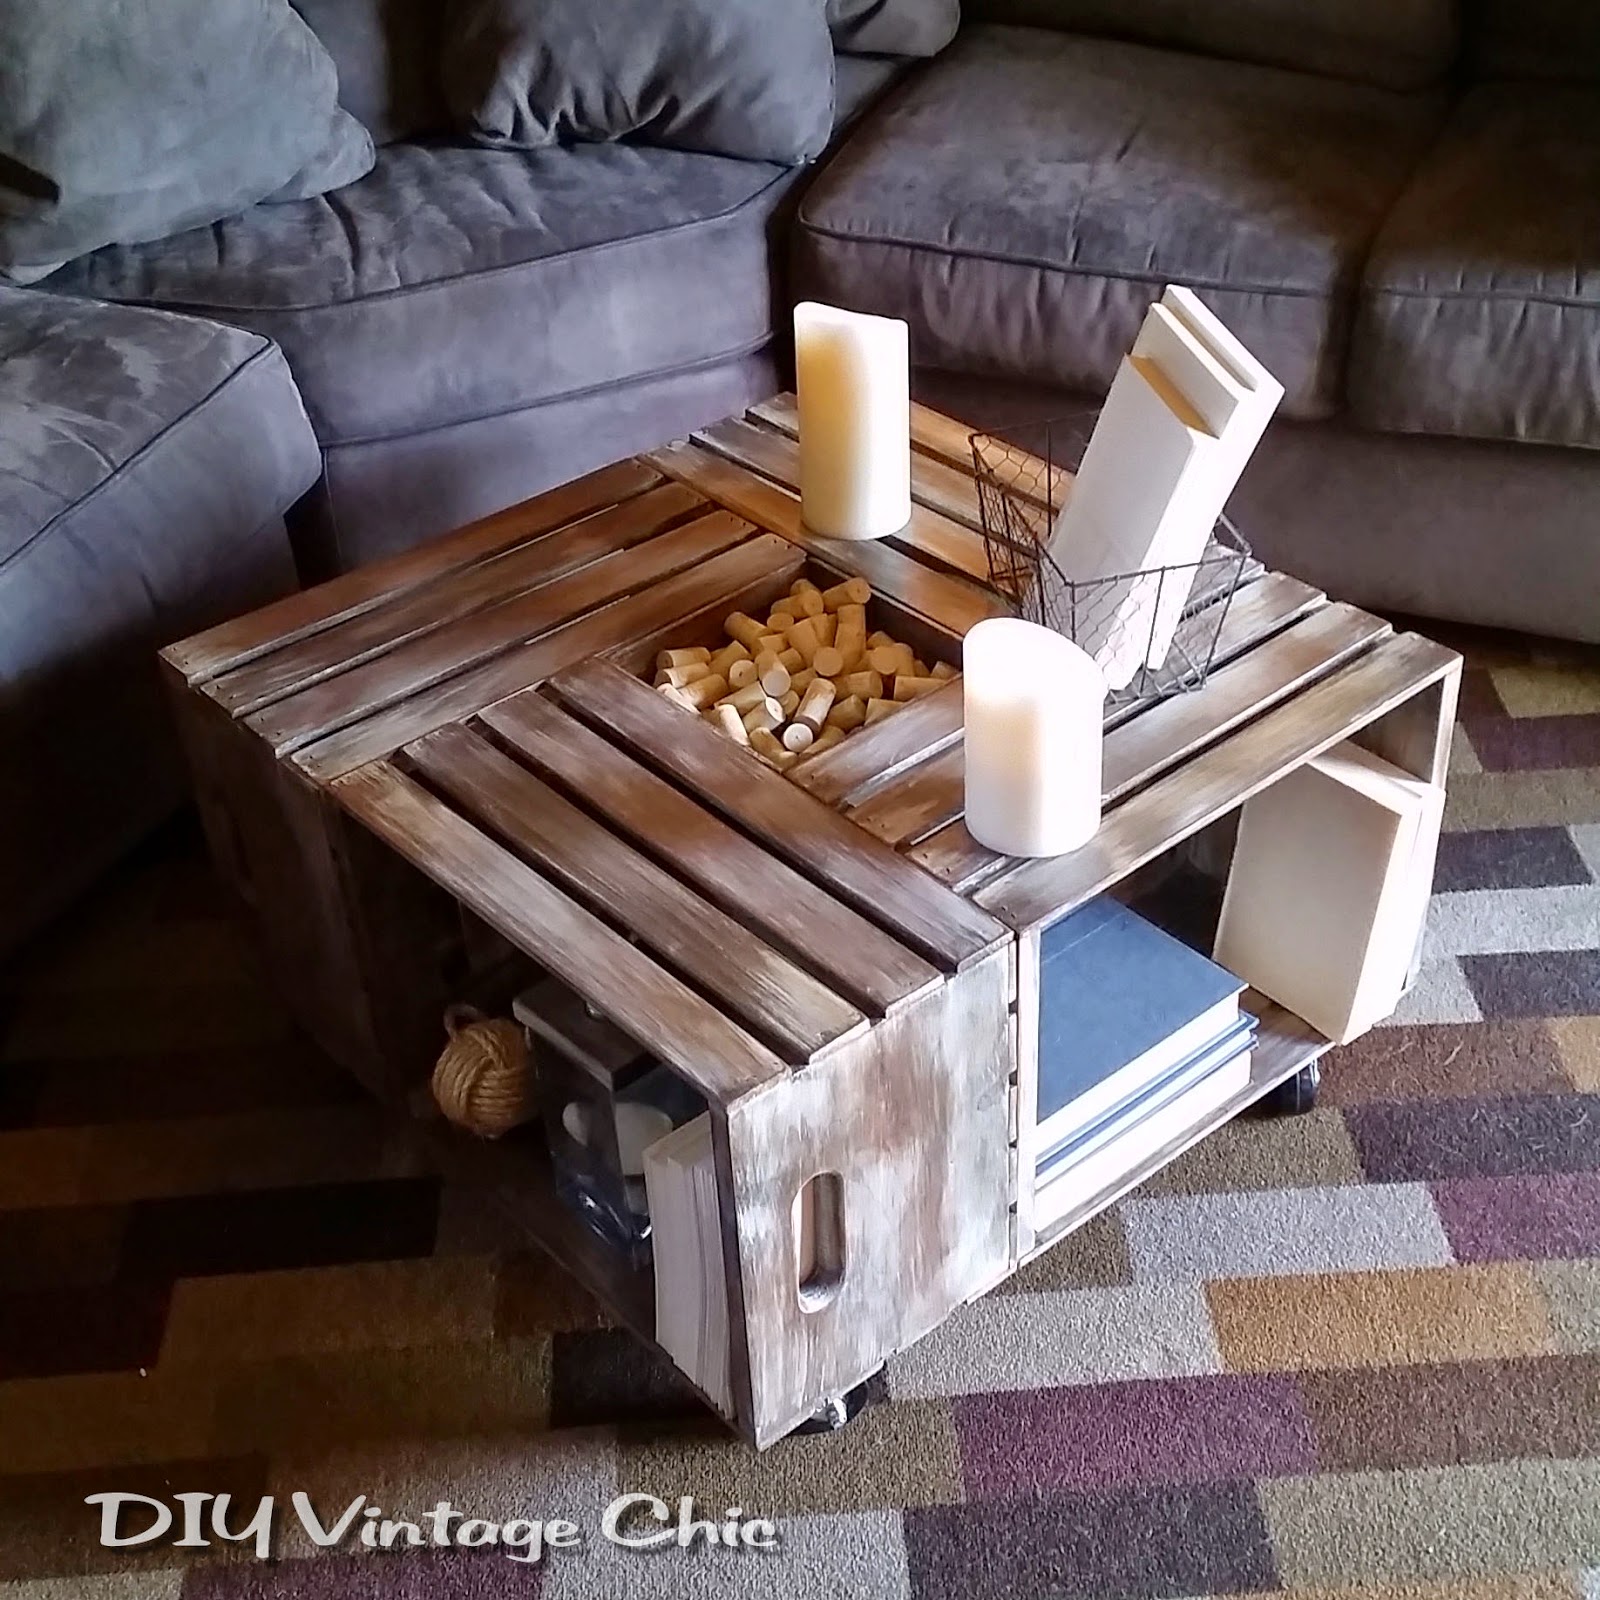 DIY Vintage Chic: DIY Vintage Wine Crate Coffee Table ...